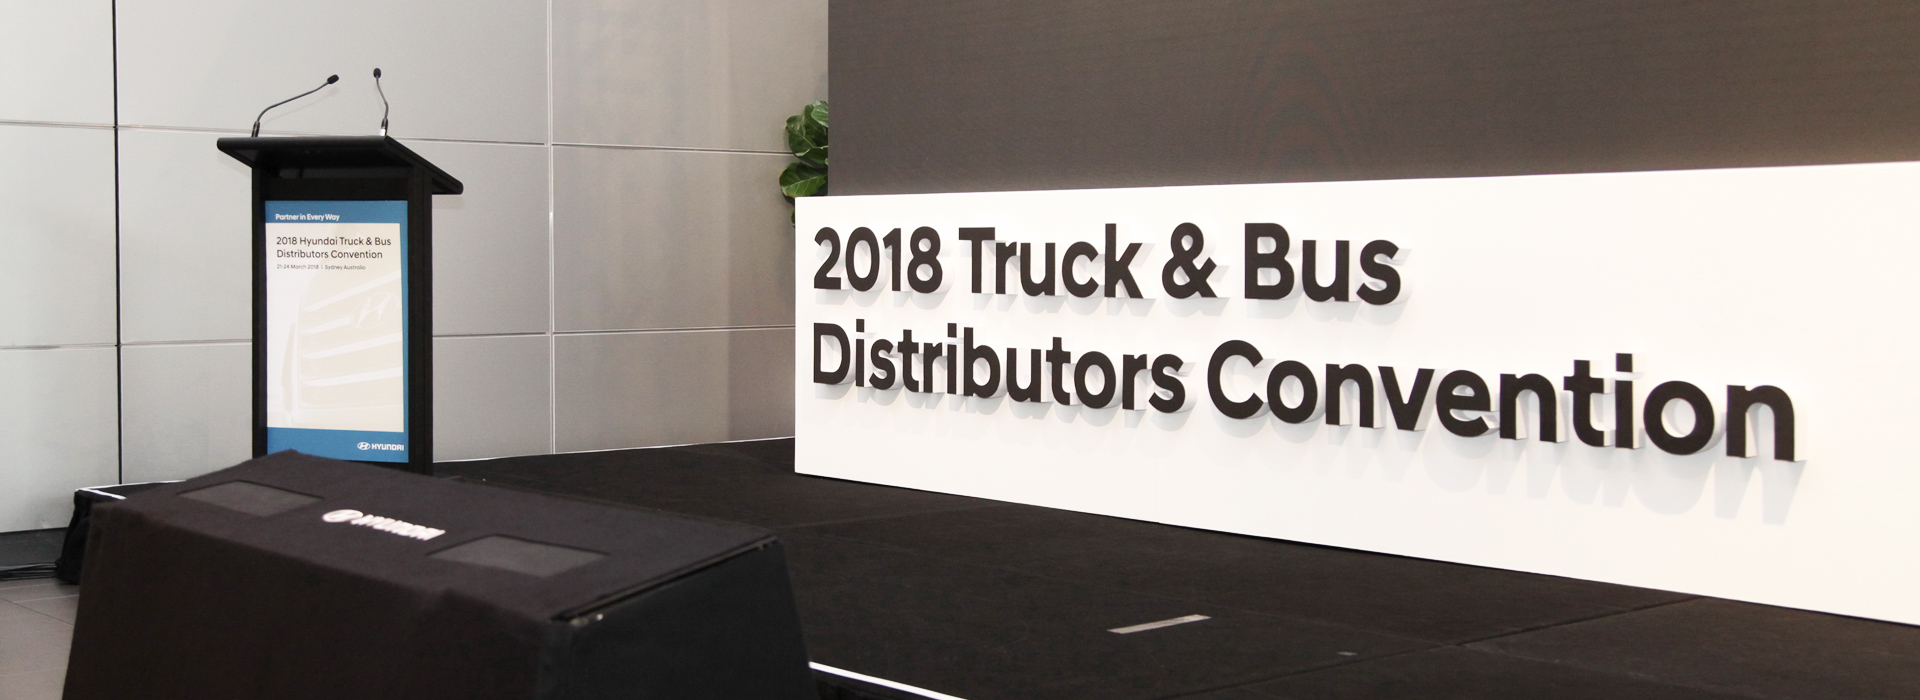 اتفاقية موزعي العلامة التجارية Hyundai Truck & Bus  2018 Slider Image1